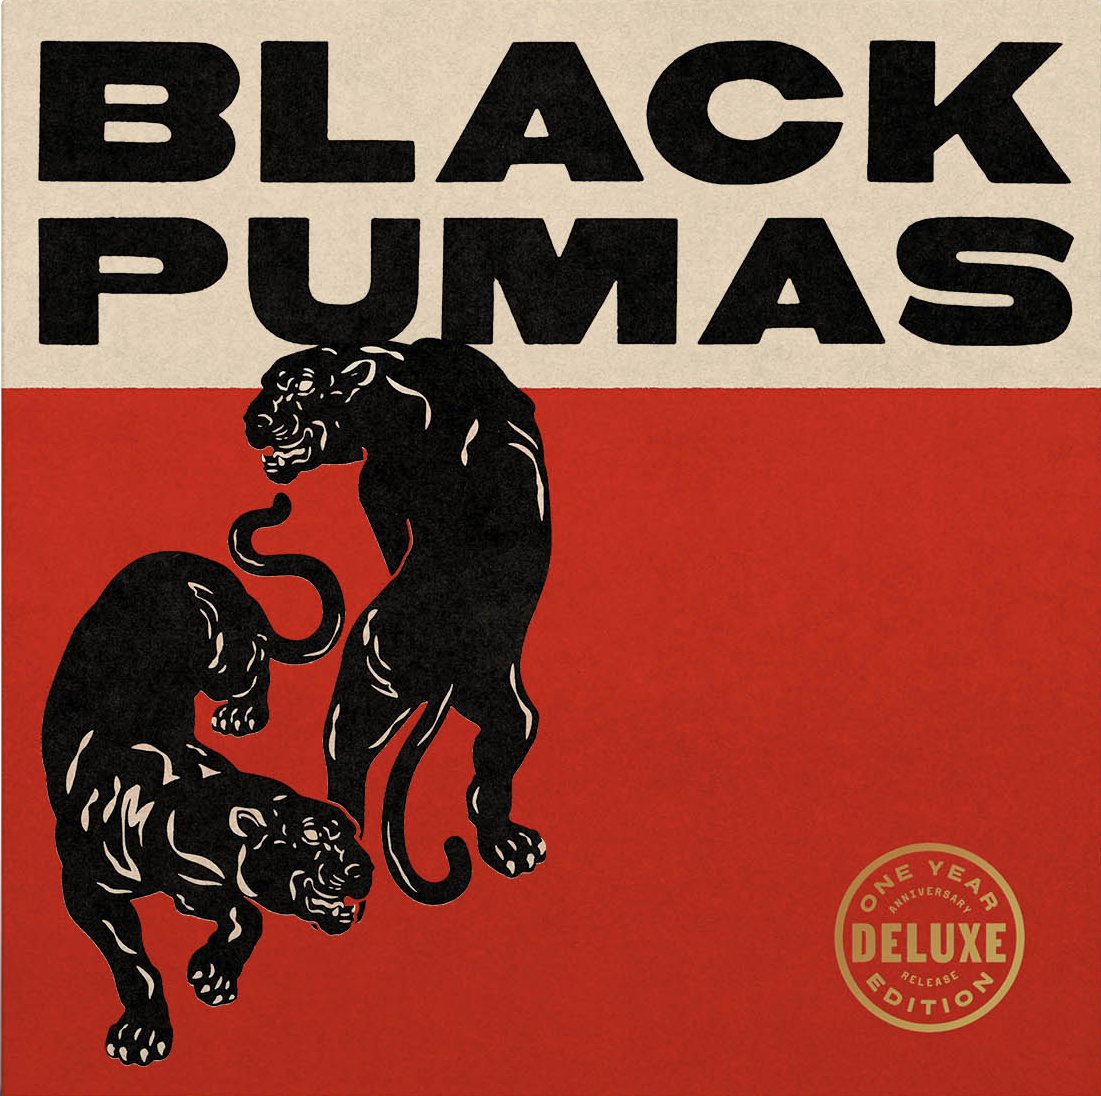 Black Pumas - Black Pumas (Deluxe Edition. Gold, Black & Red Splatter Vinyl)